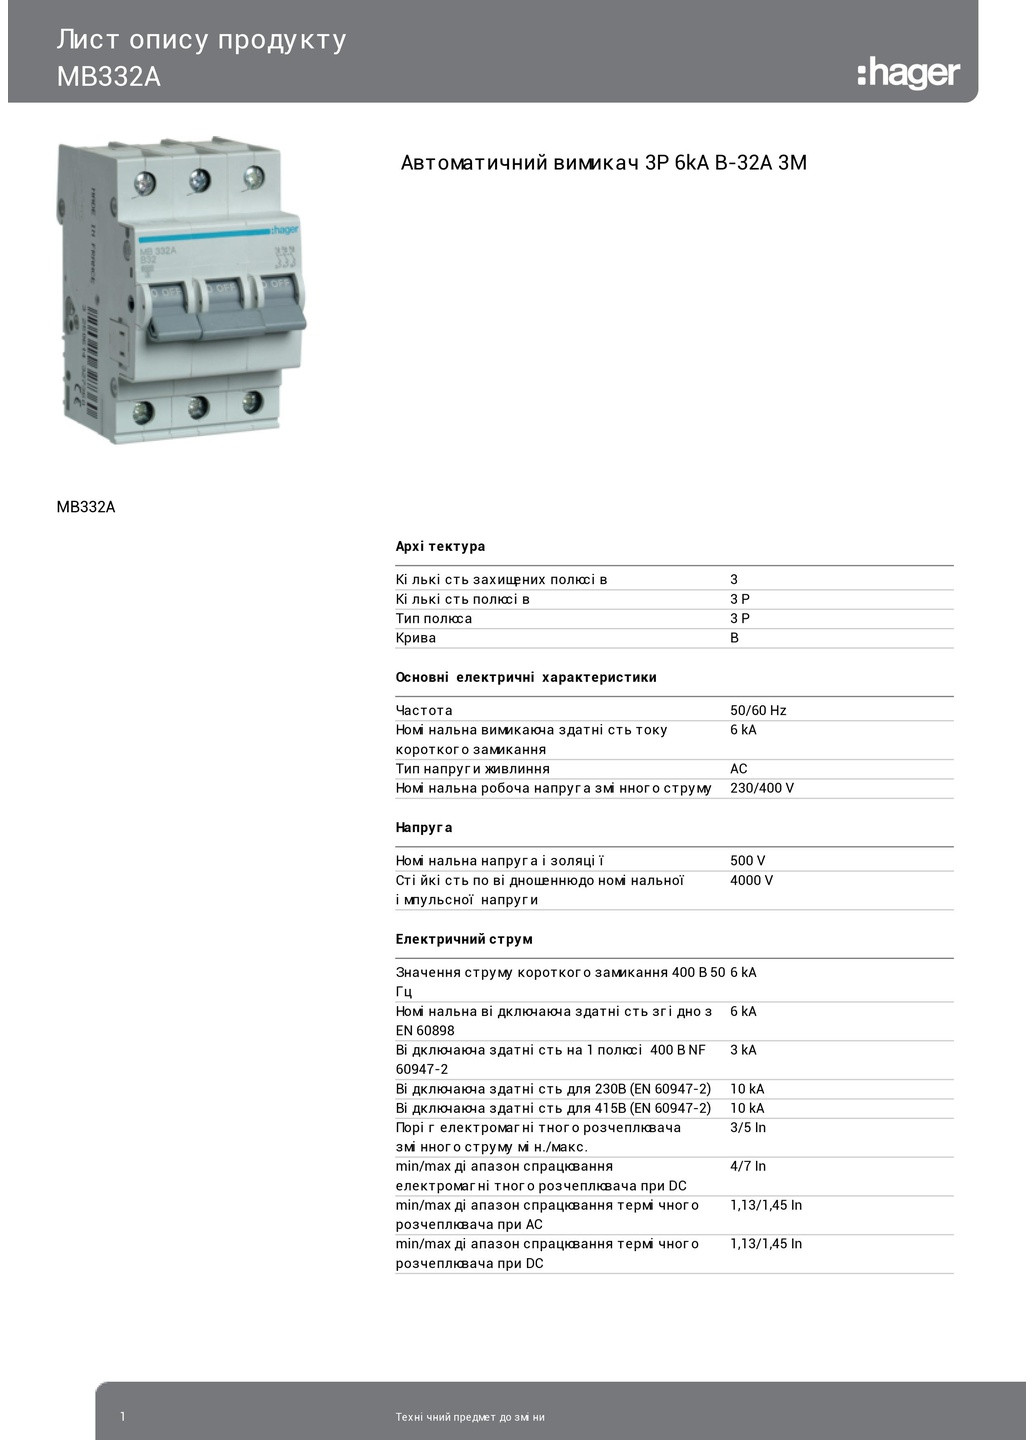 Вводный автомат трехполюсный 32А автоматический выключатель MB332A 3P 6kA B32A 3M (3127) Hager (265535751)